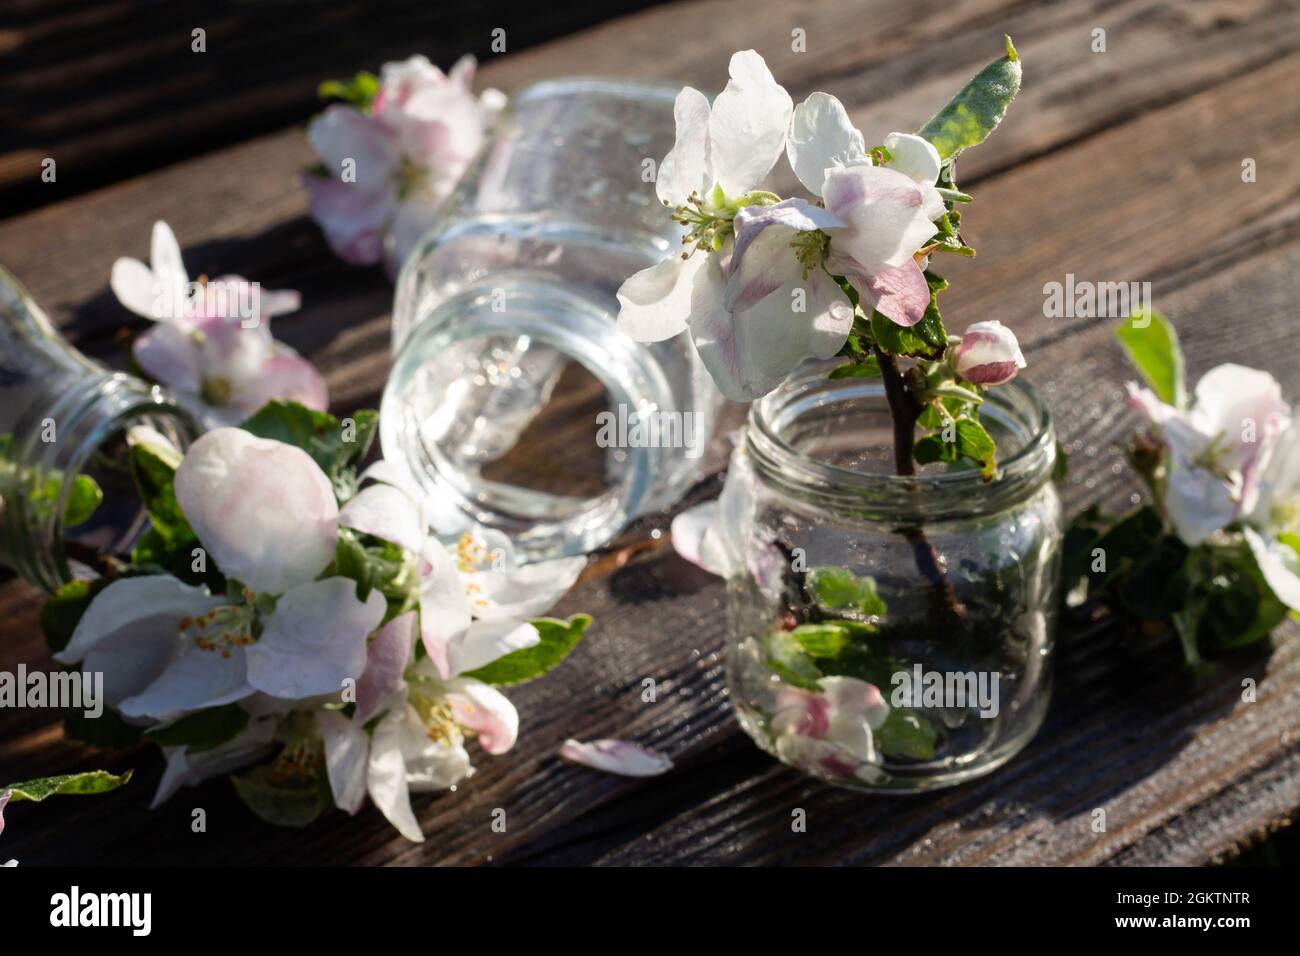 Bottiglie e vasetti di vetro trasparenti con acqua e fiori di melo su un piano rustico in legno sotto gocce d'acqua. Sfondo scuro. Foto Stock